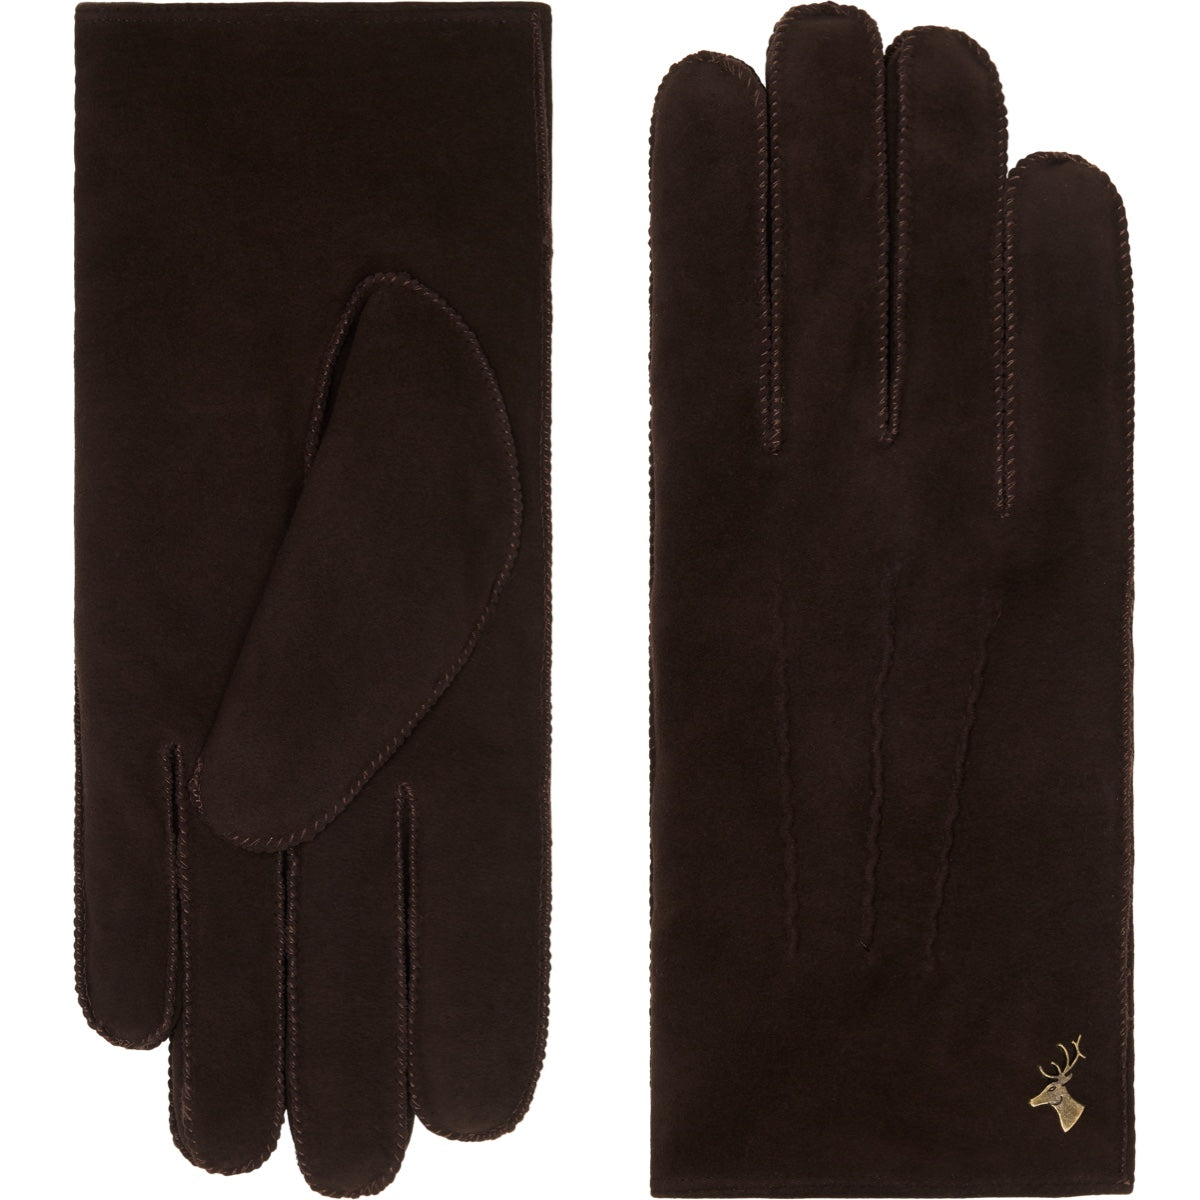 Suede Leather Gloves Brown Matthew - Schwartz & von Halen® - Premium Leather Gloves - 2